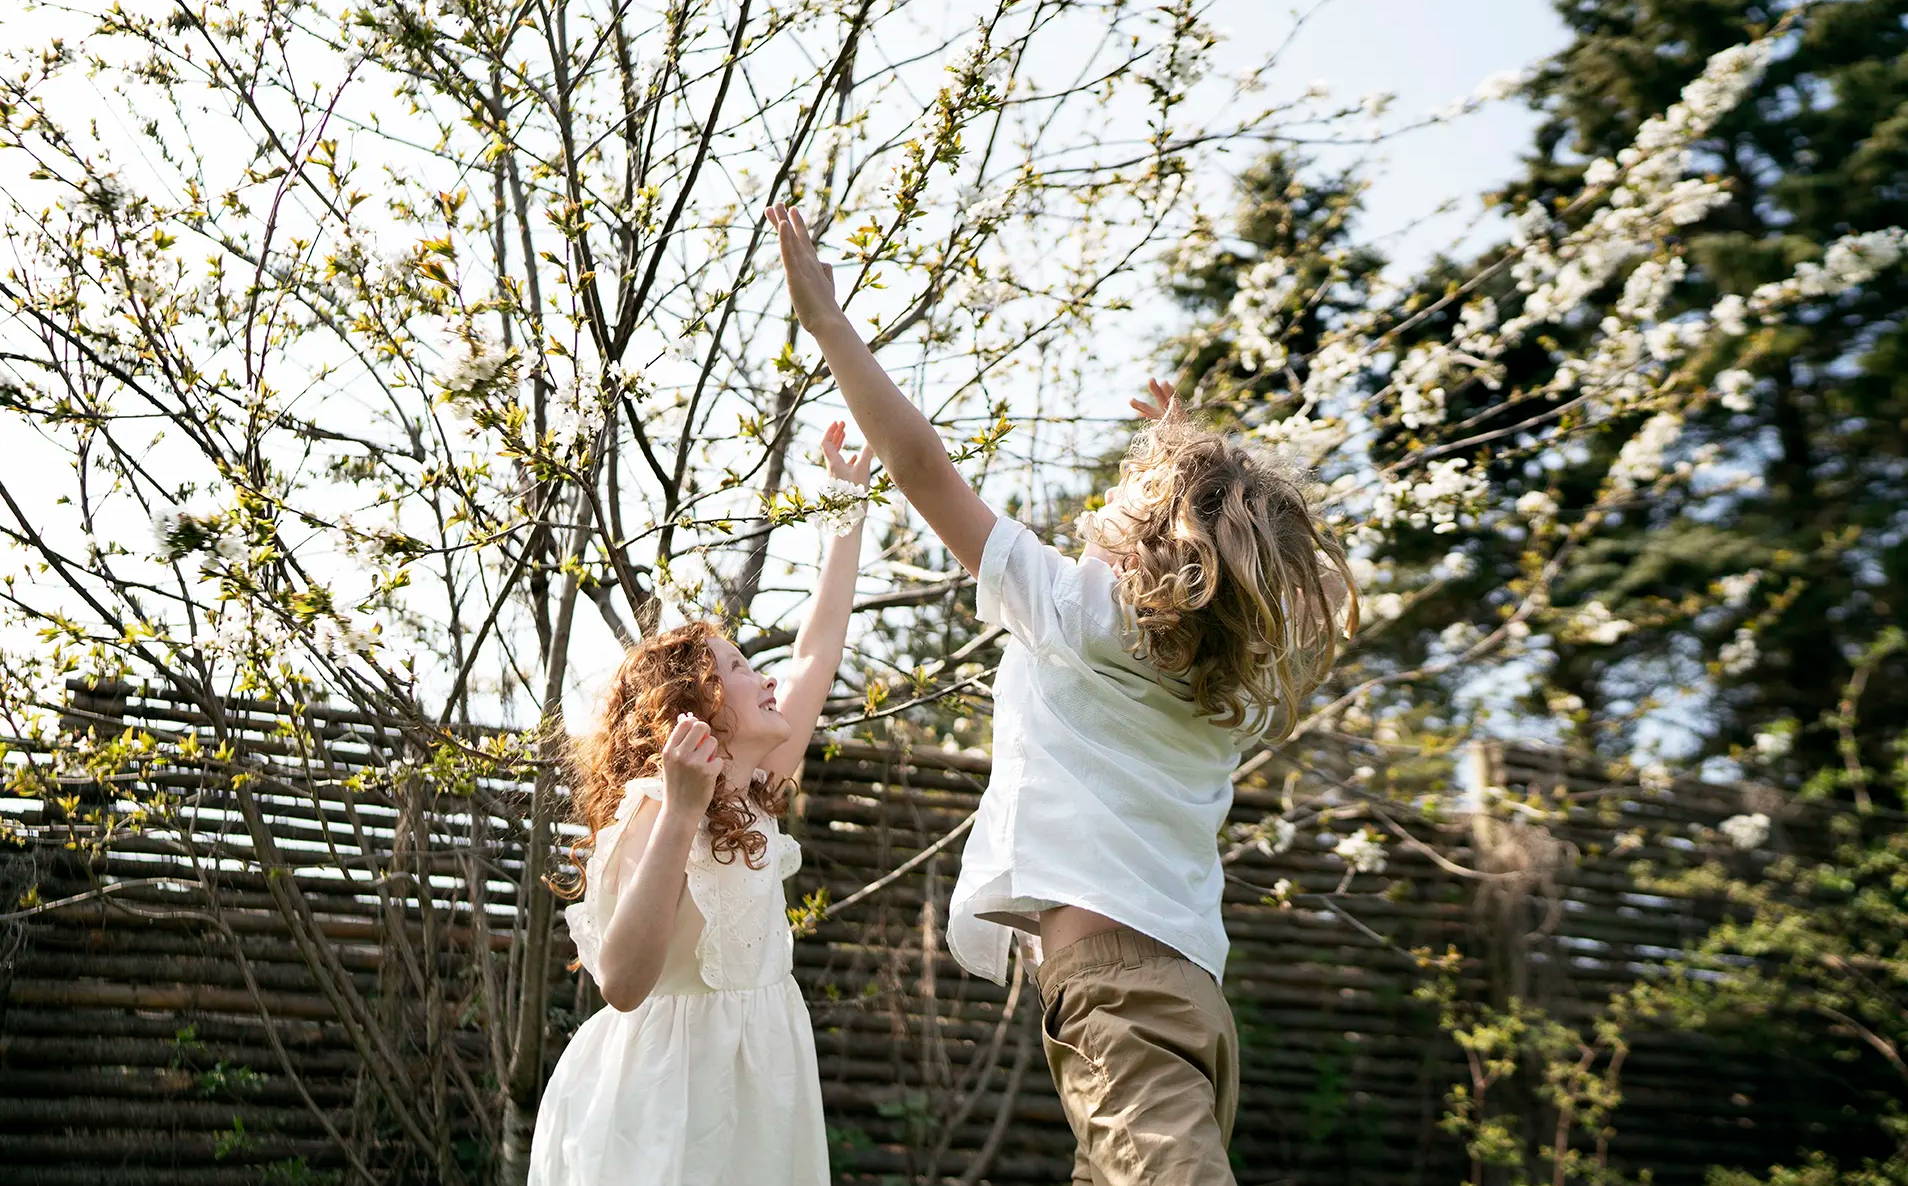  Ein Mädchen und ein Junge spielen zusammen draußen und springen, um die zarten rosa Blüten an den Bäumen zu berühren